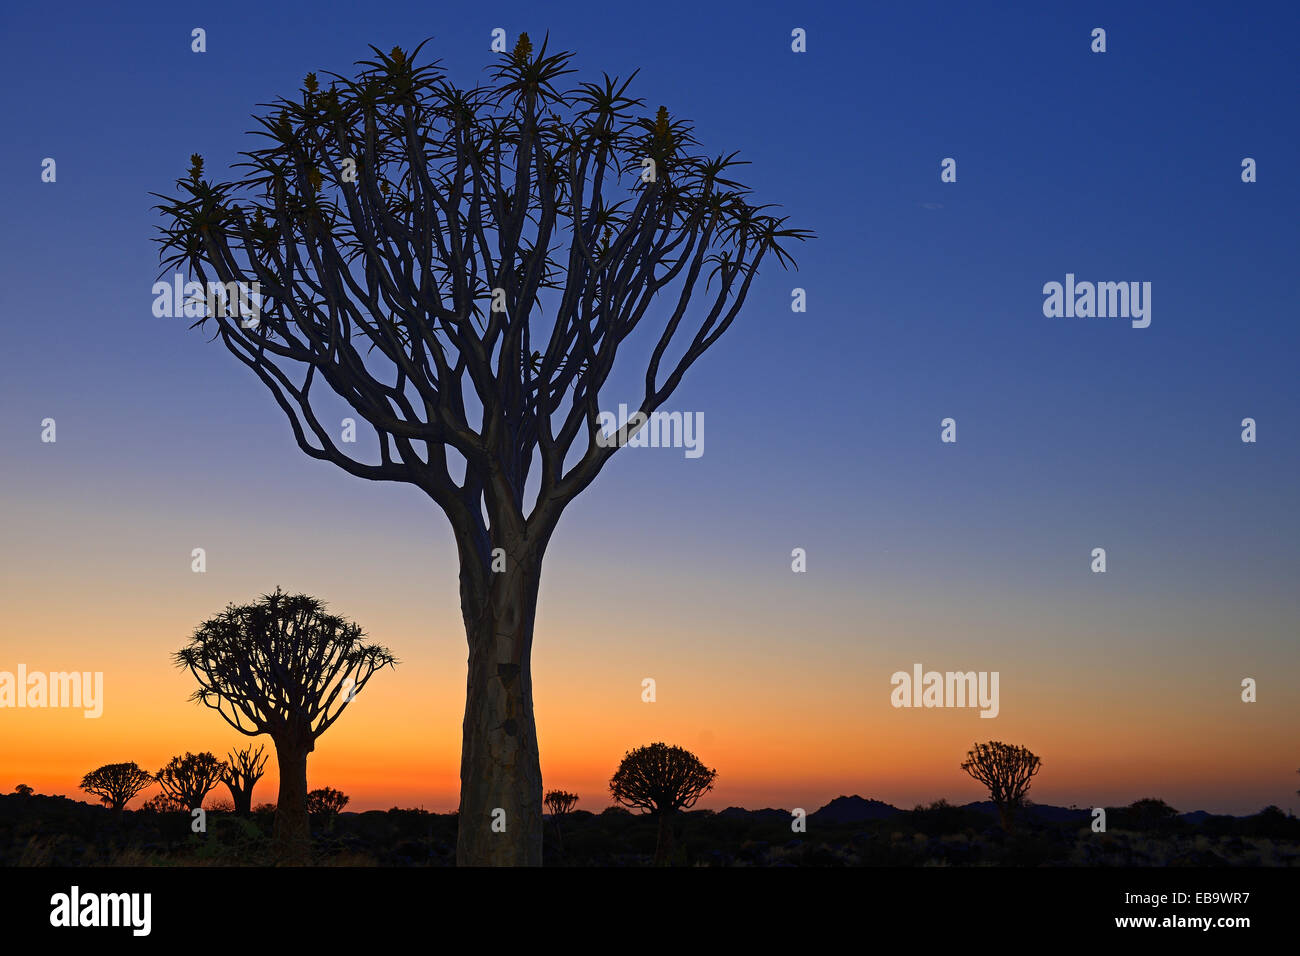 Quiver Trees or Kokerbooms (Aloe dichotoma) at sunset, Keetmanshoop, Karas Region, Namibia Stock Photo